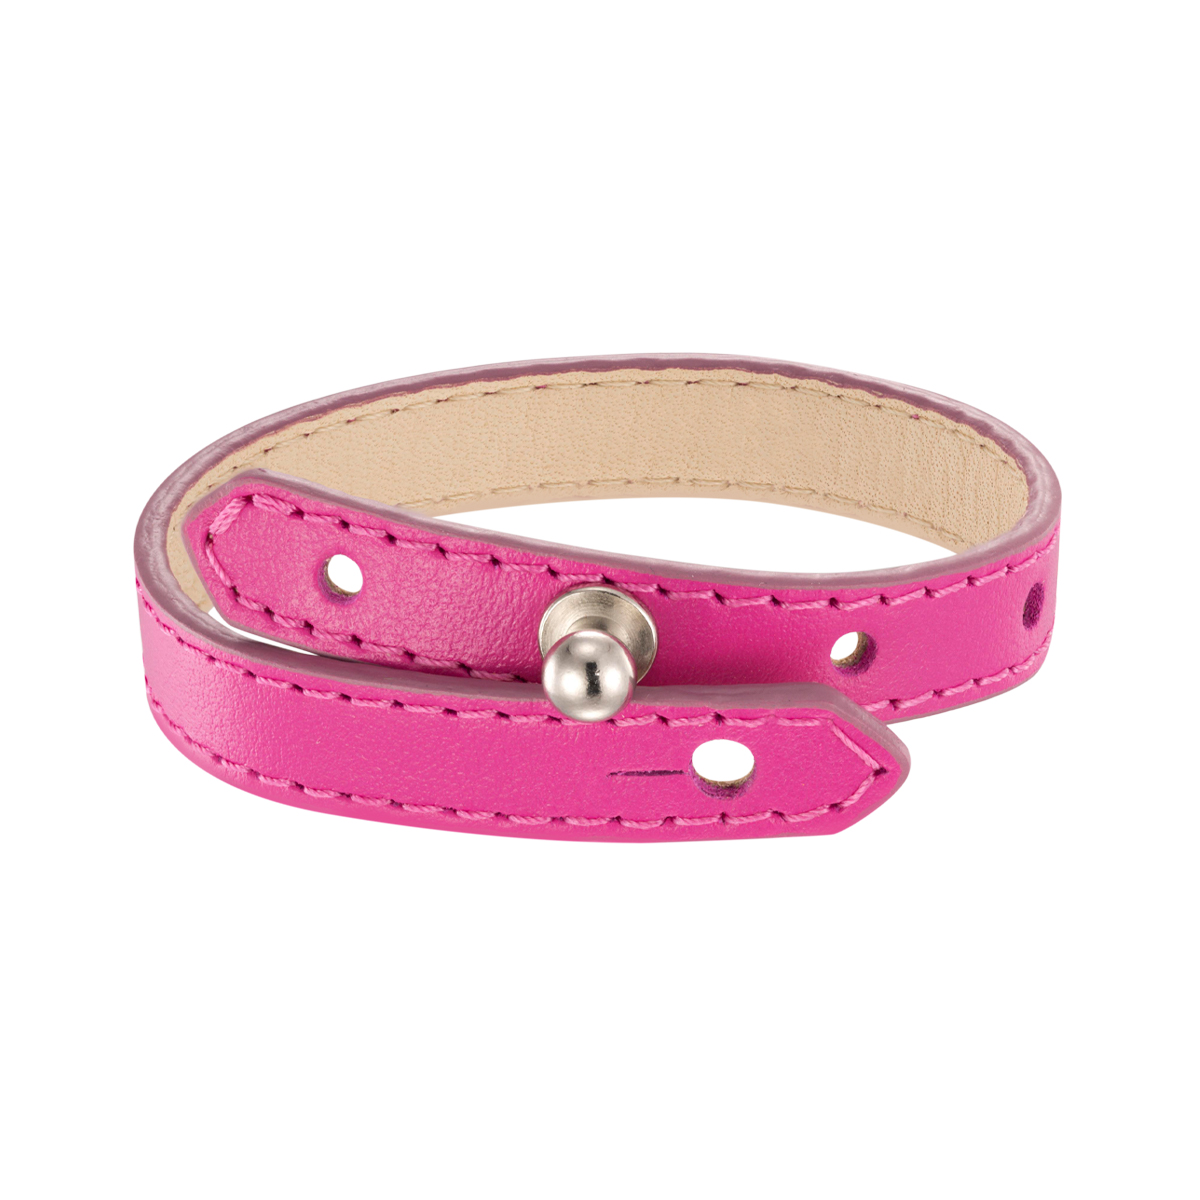 Ярко-розовый кожаный браслет.Ширина 10 мм